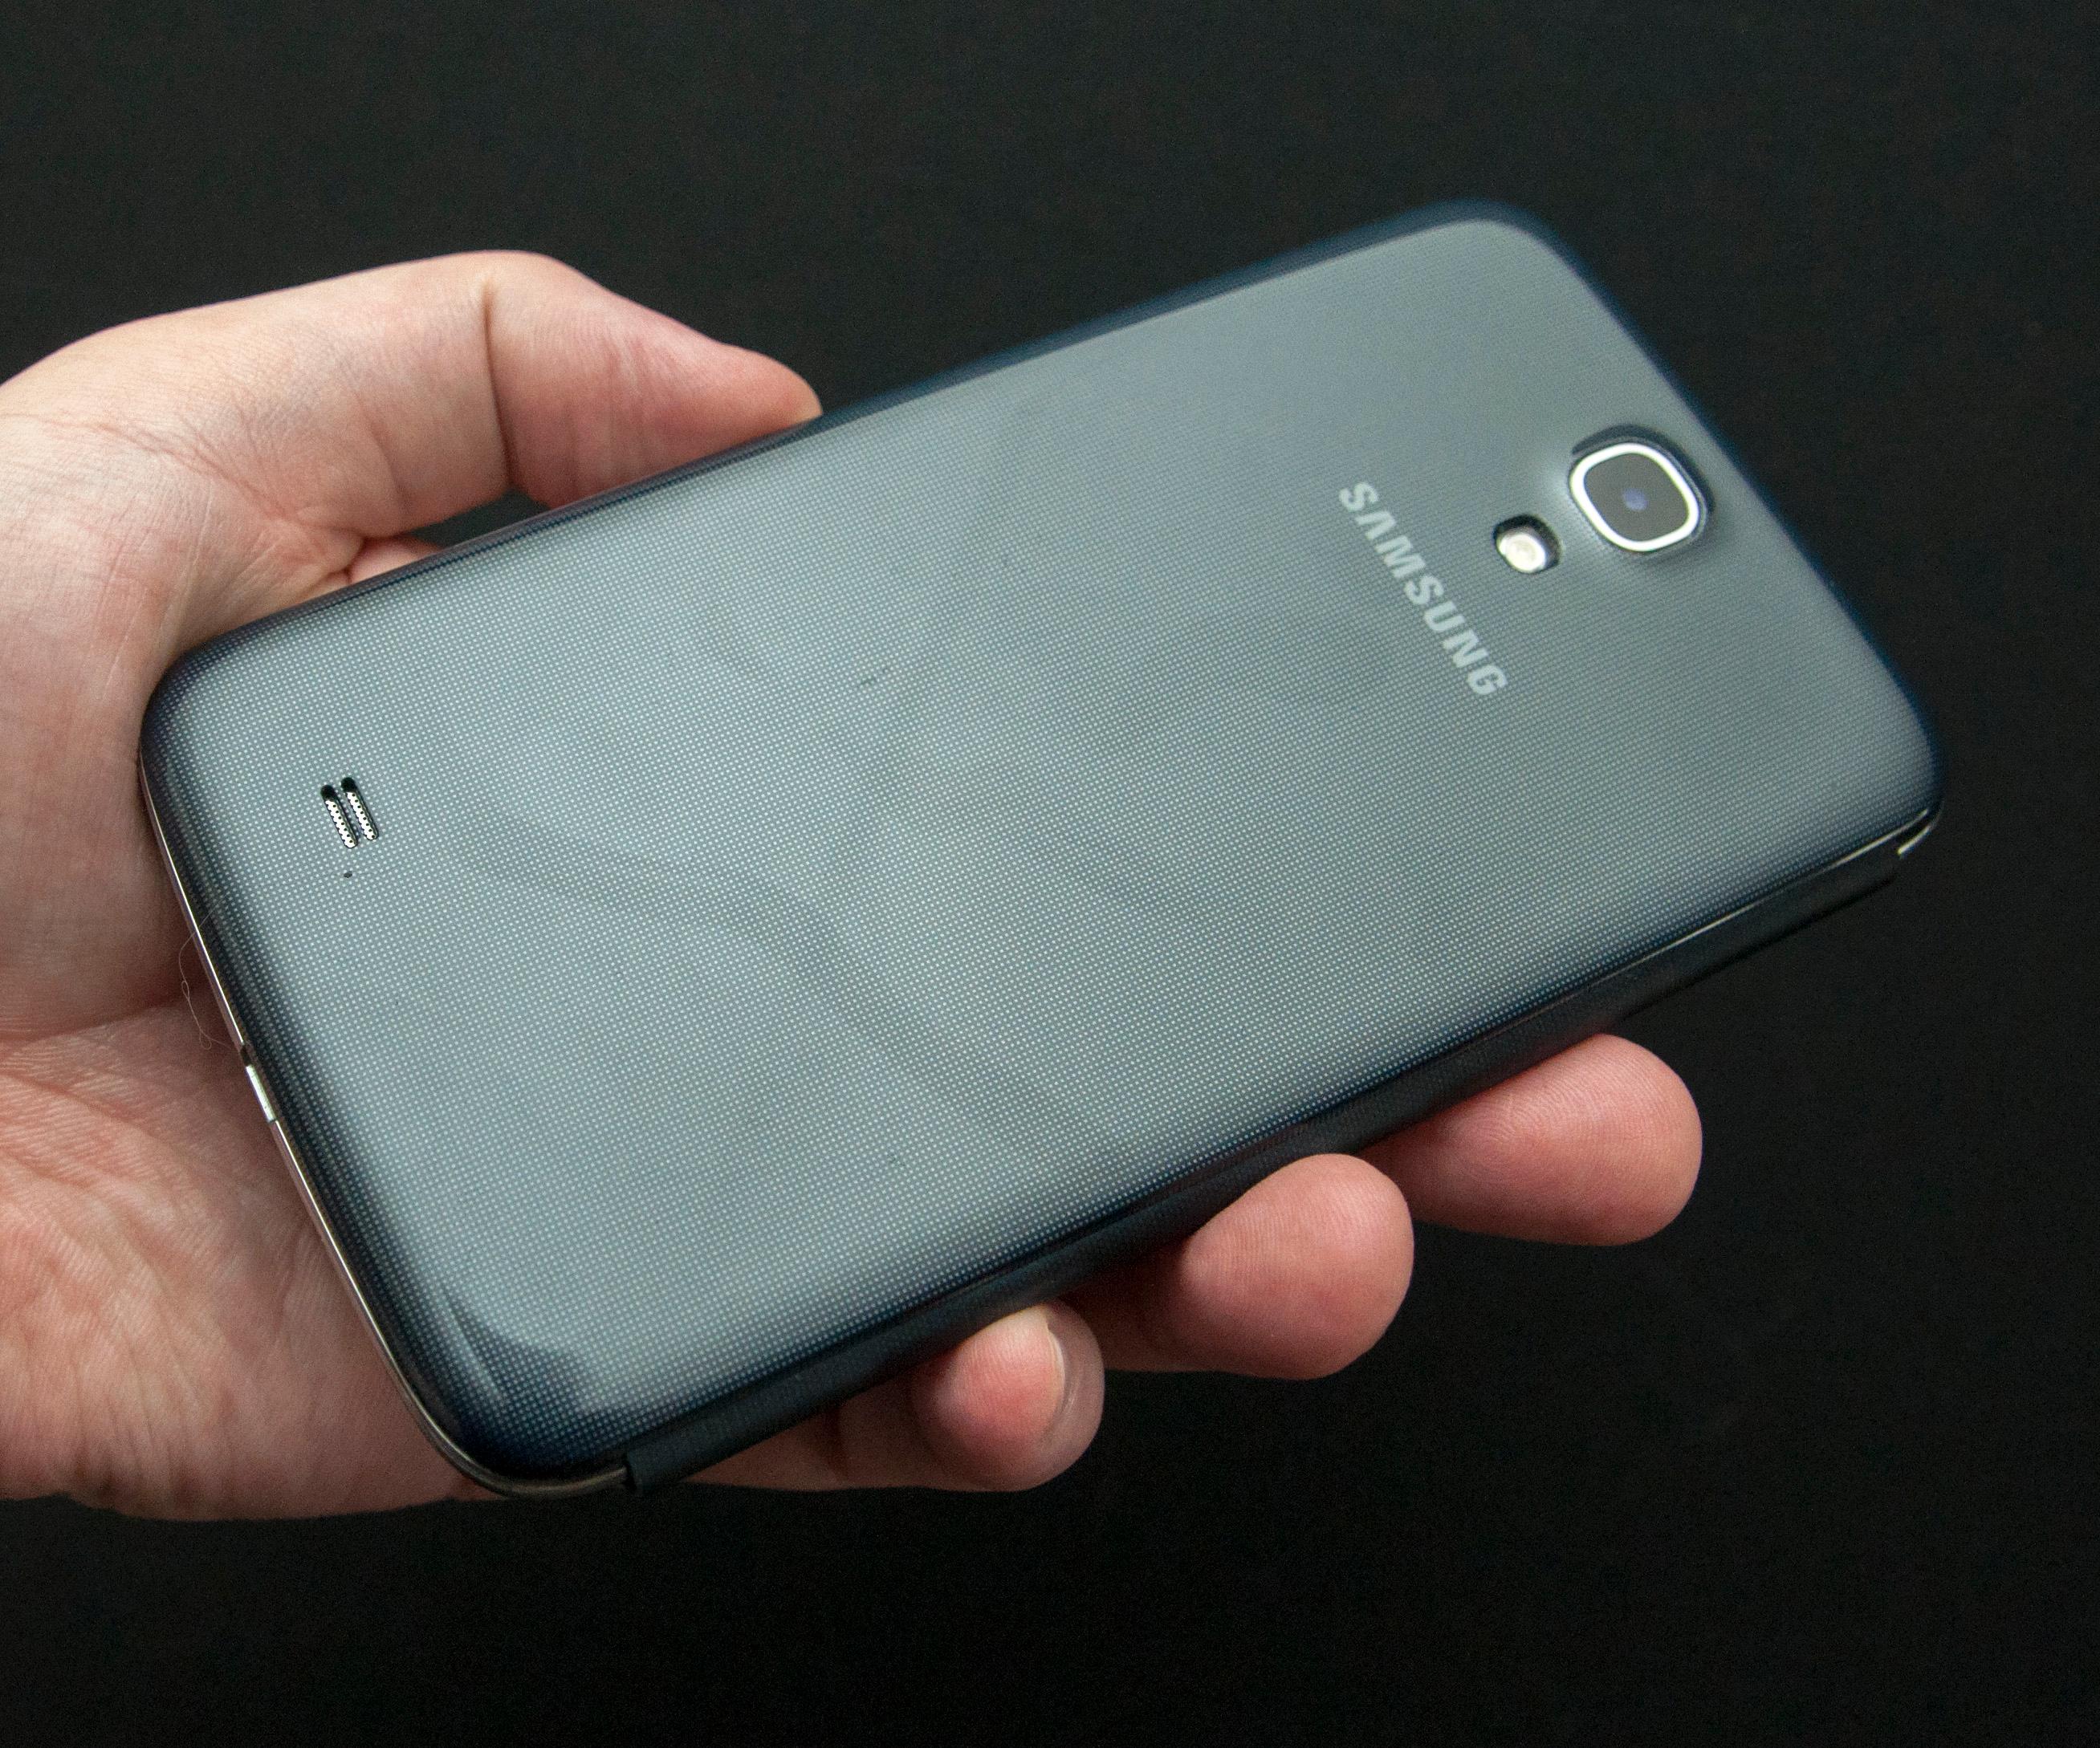 Baksiden av telefonen har det samme prikkemønsteret som vi kjenner fra Galaxy S4.Foto: Finn Jarle Kvalheim, Amobil.no